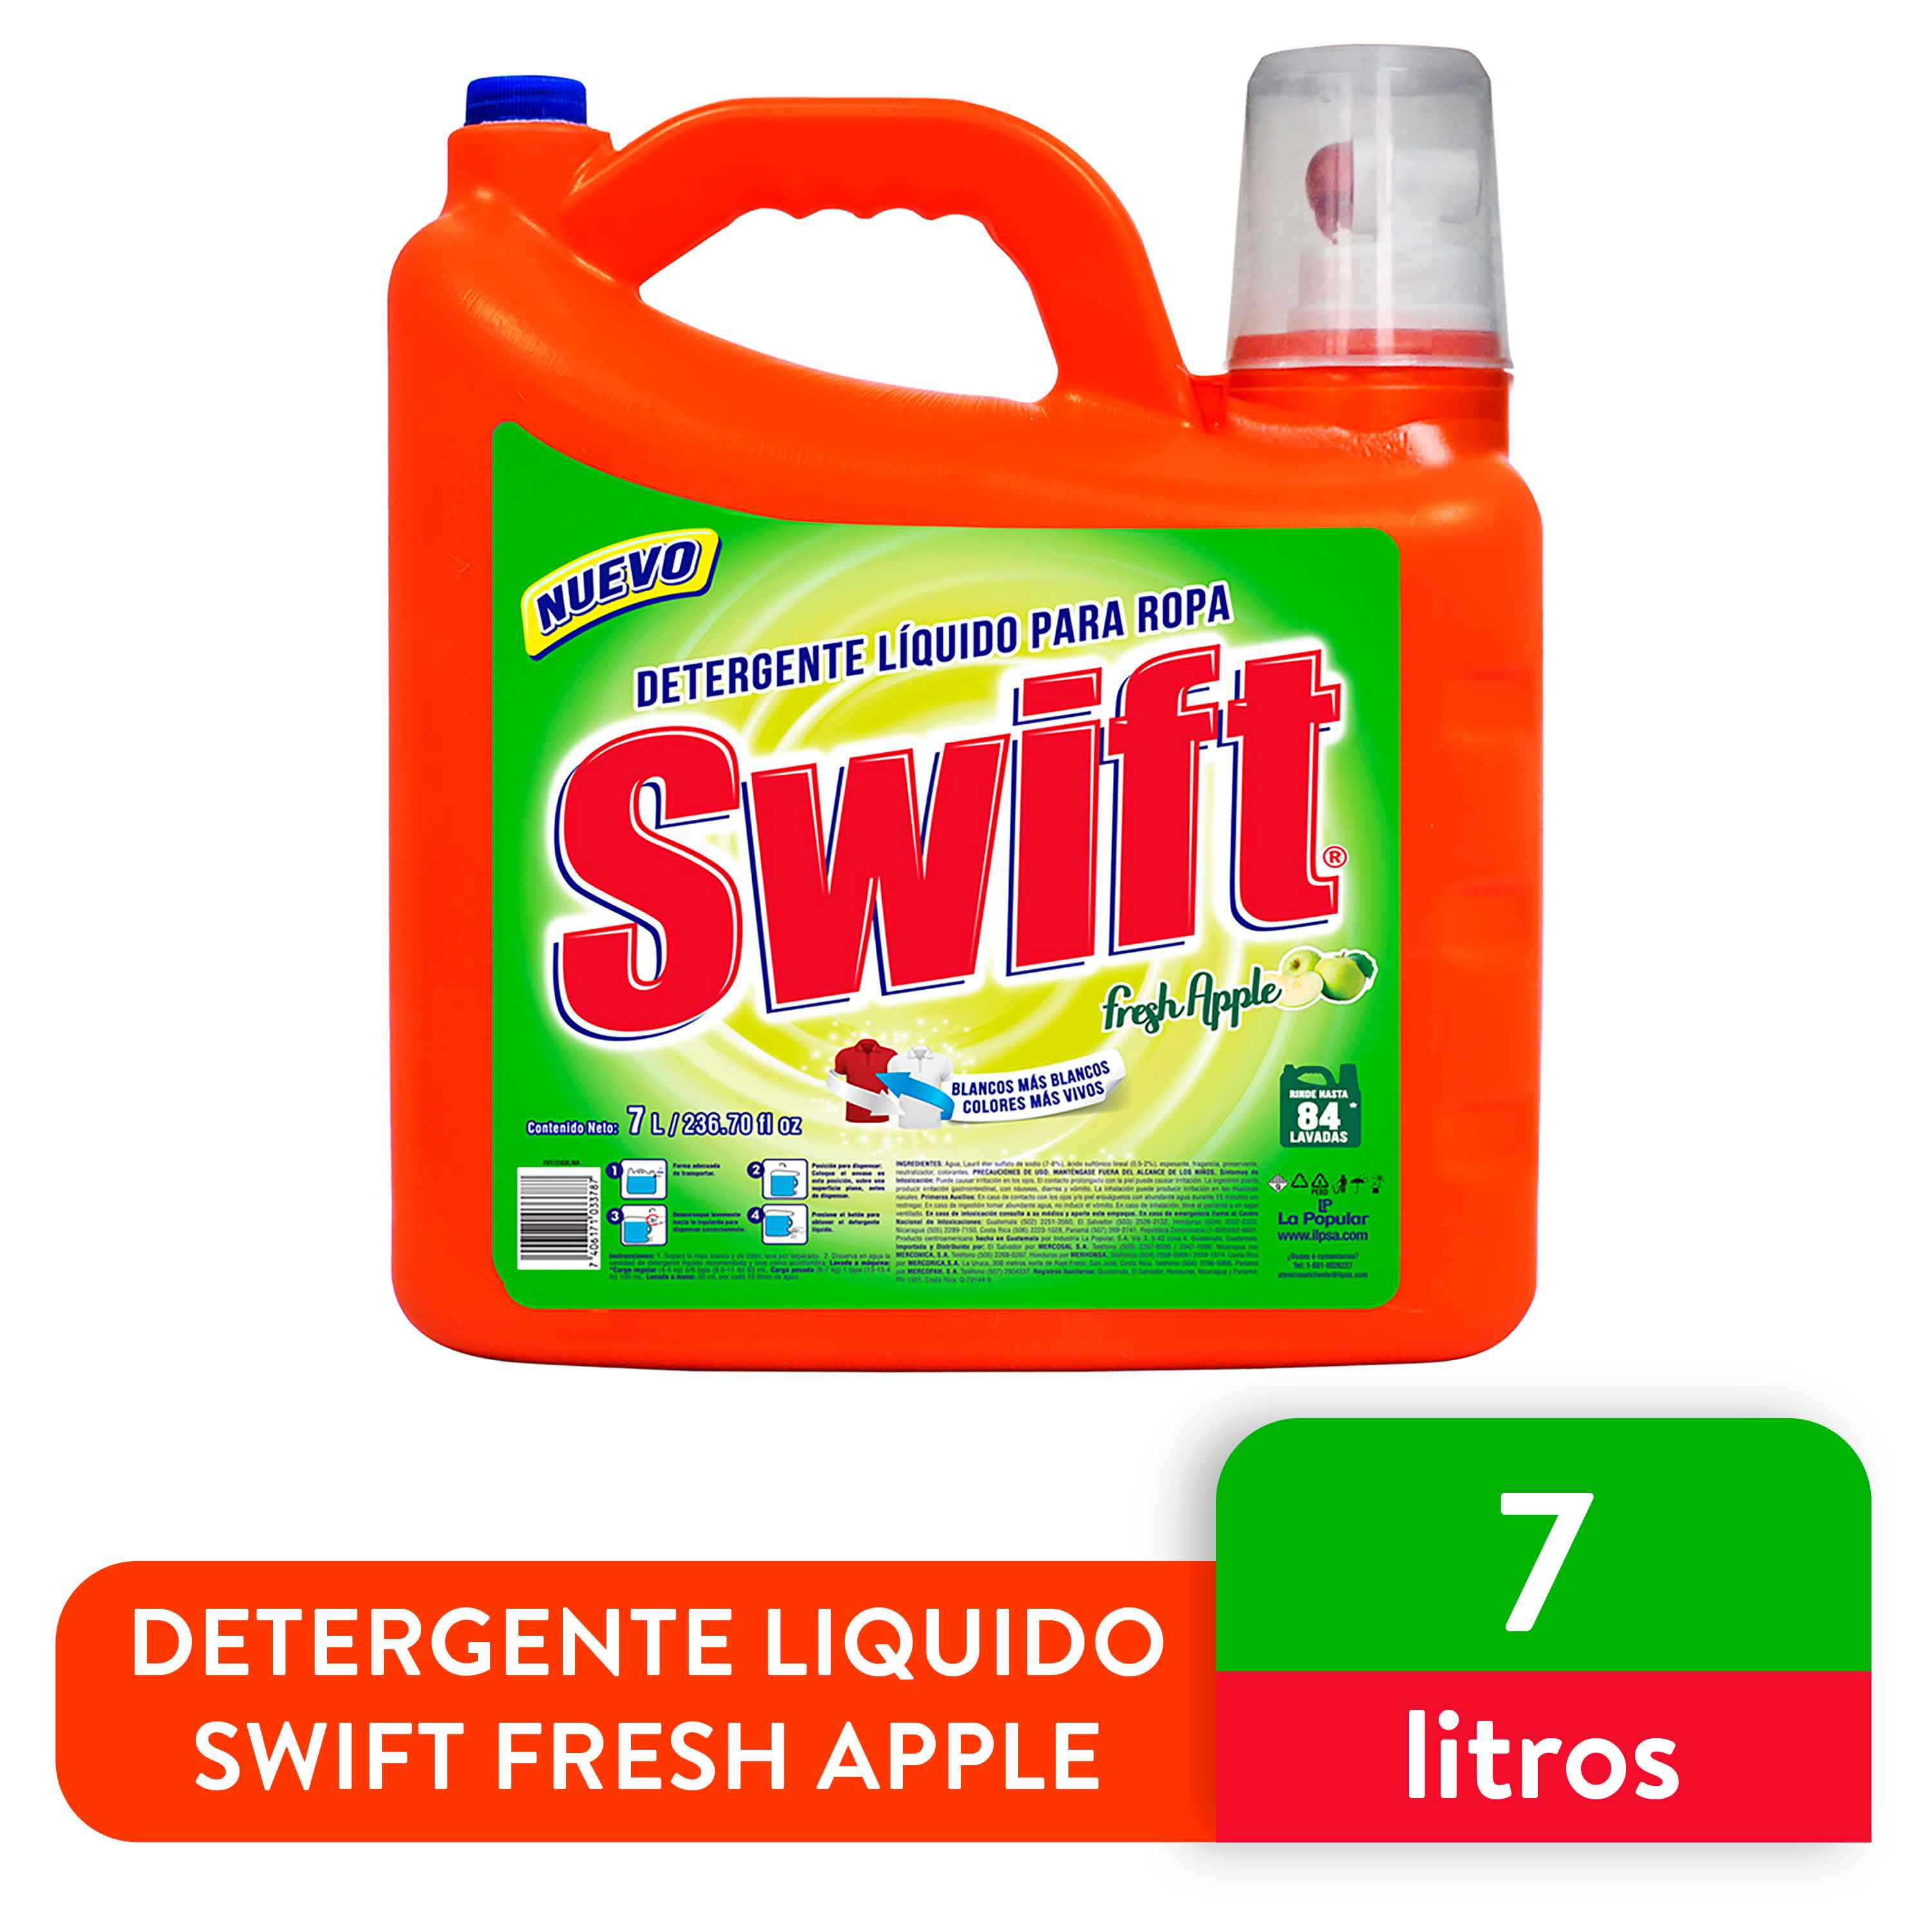 Detergente-Liquido-Swift-Fresh-Apple-7lt-1-32373